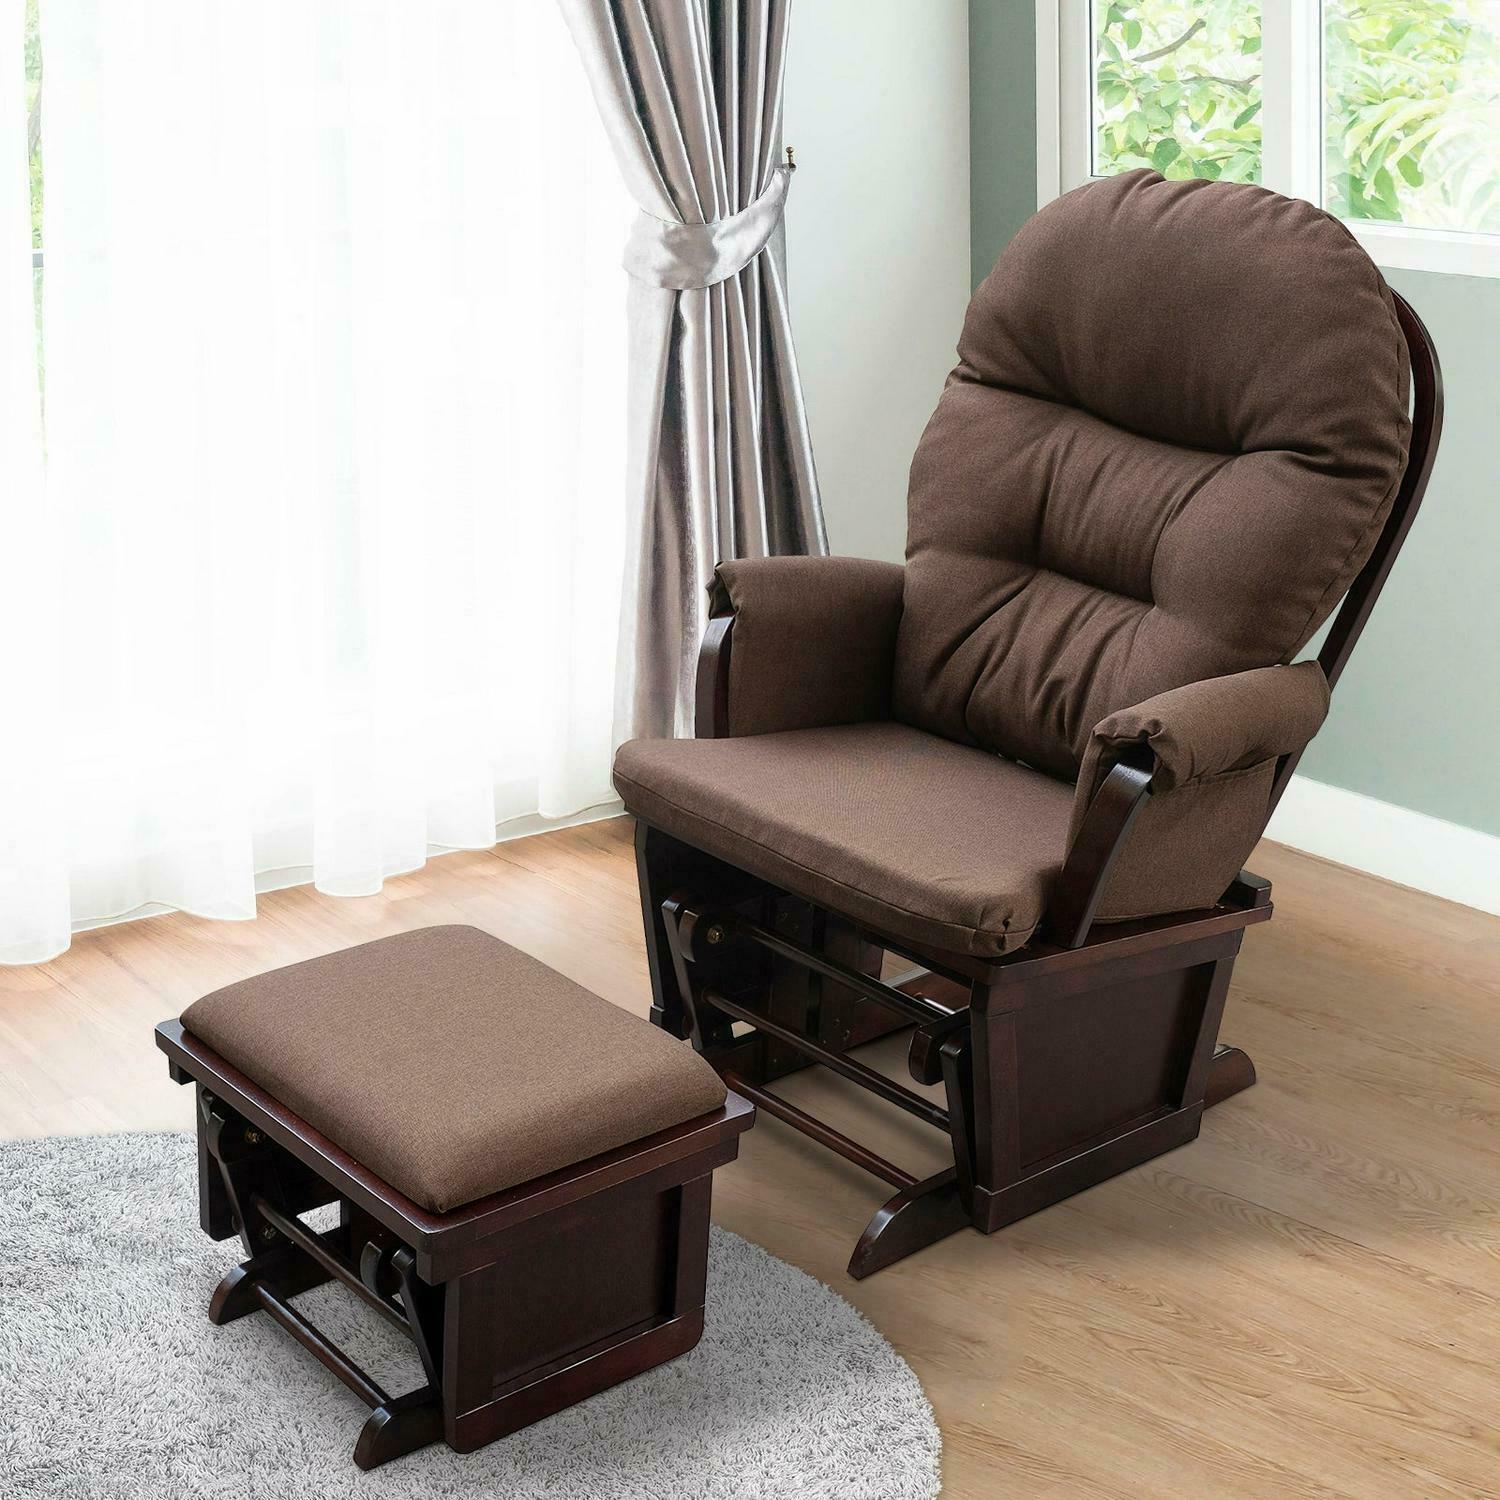 Nursery Glider Slider Rocking Chair With Ottoman In Chocolate Brown